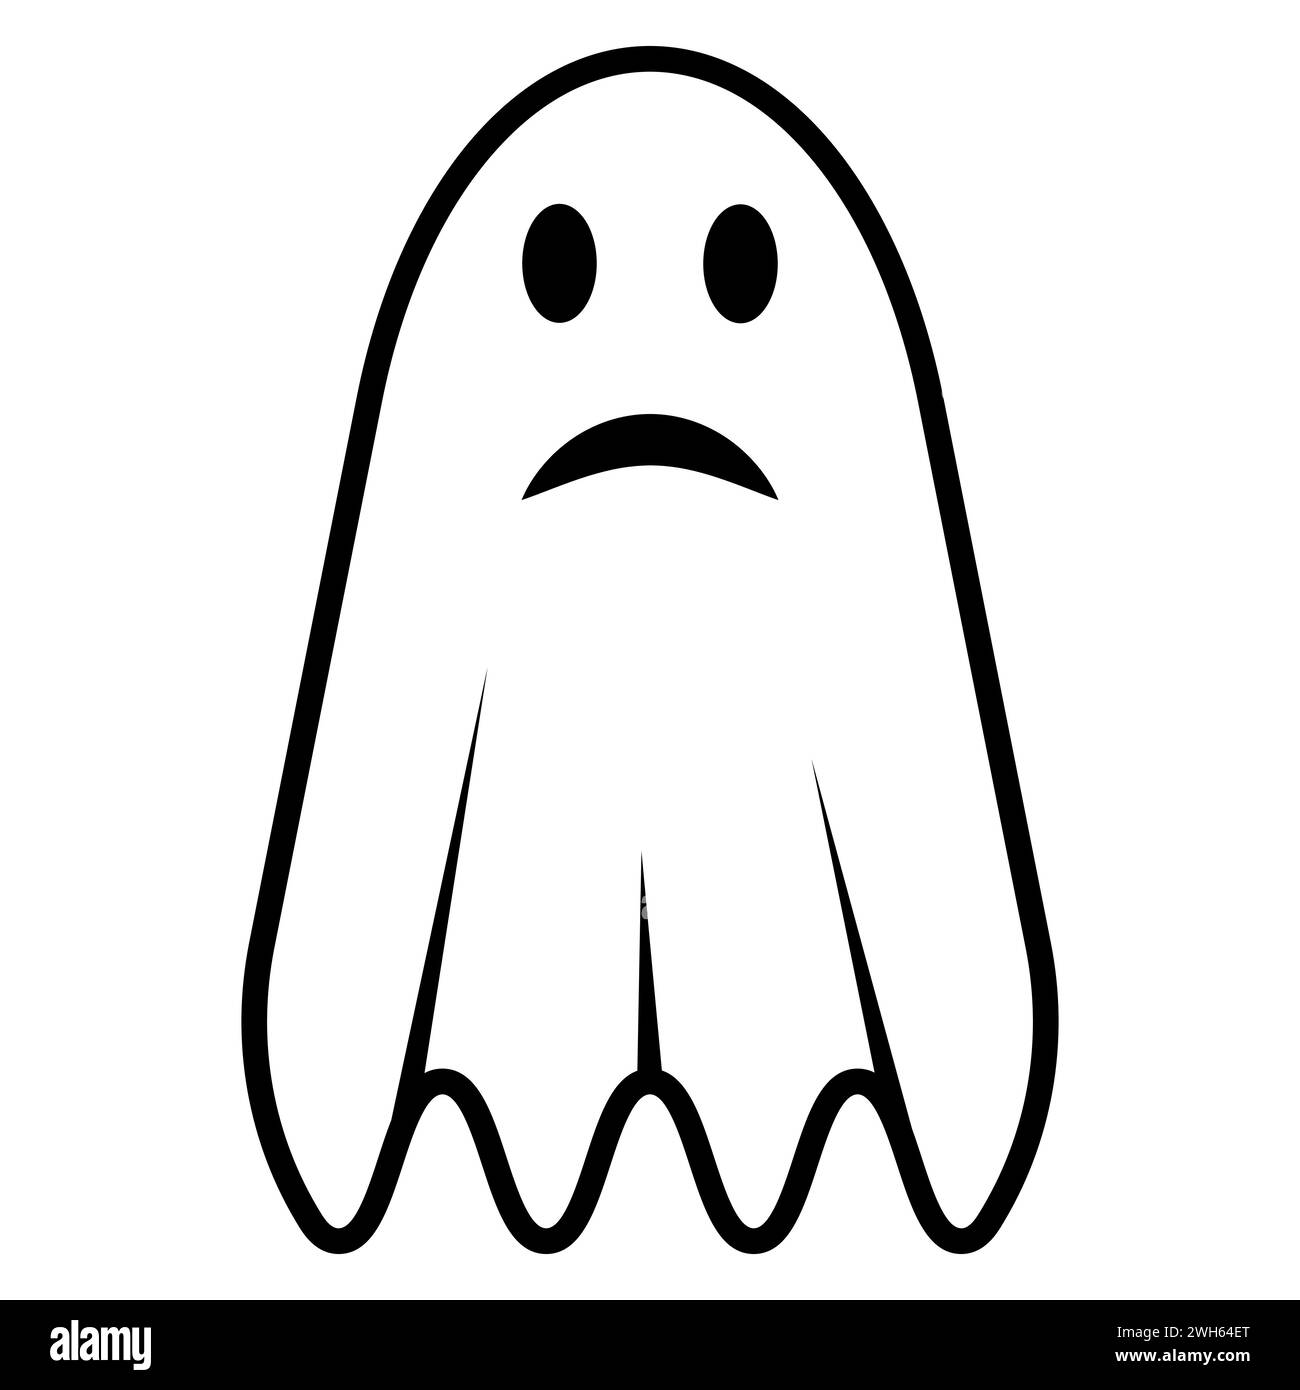 Icône fantôme effrayante, feuille suspendue avec des yeux fantômes Illustration de Vecteur